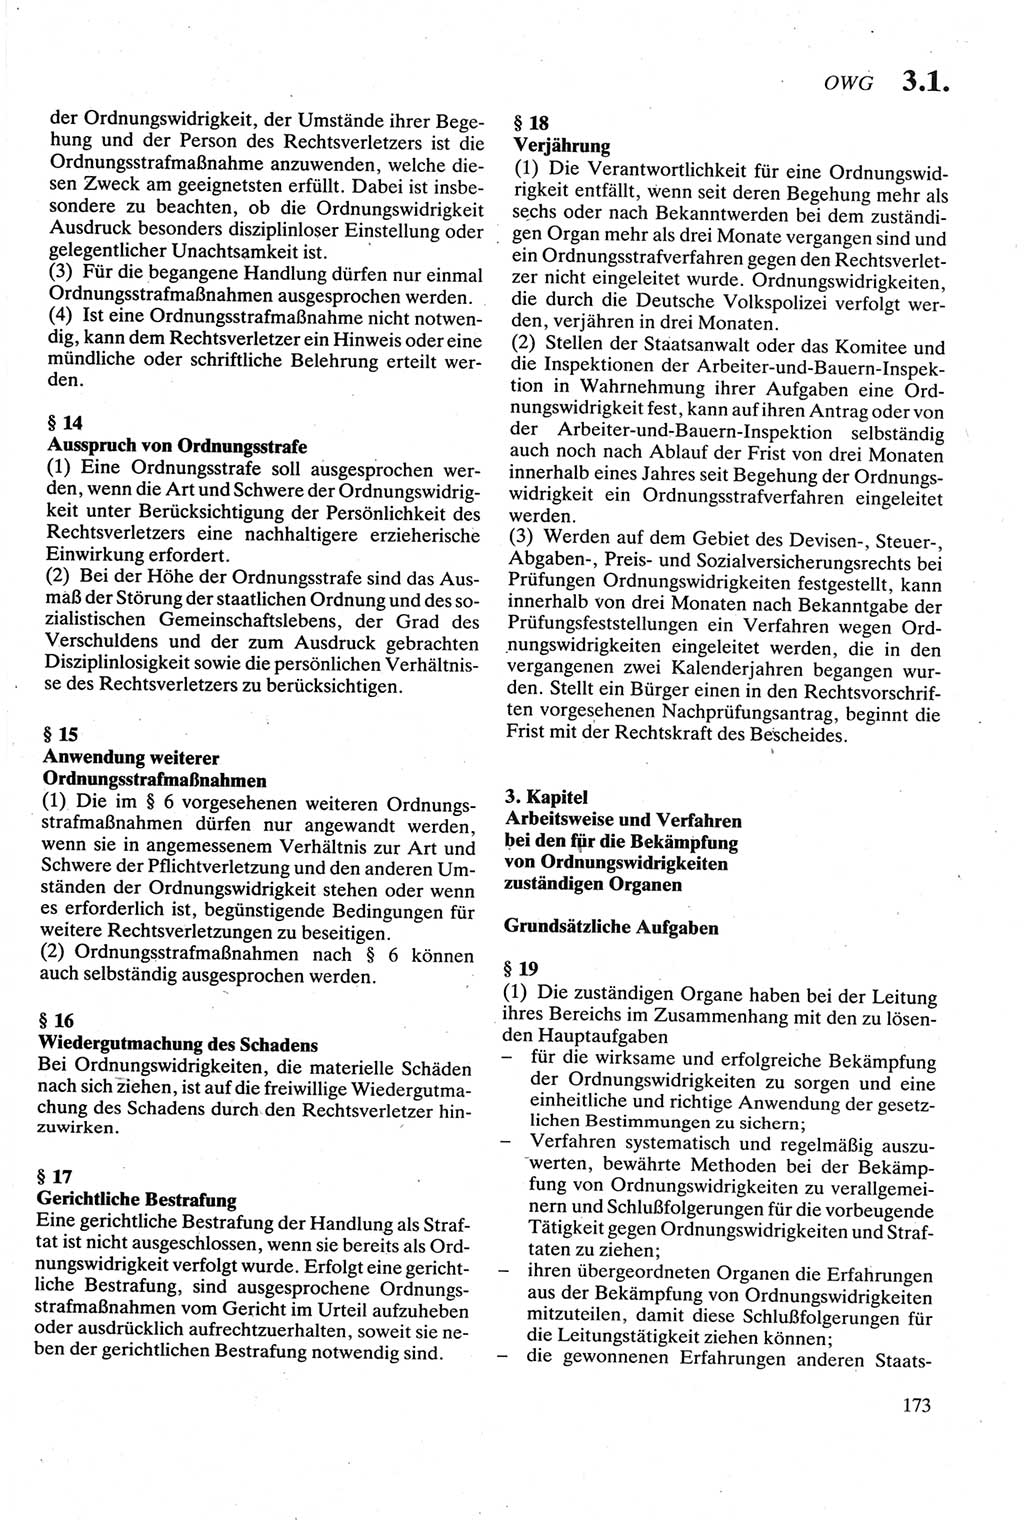 Strafgesetzbuch (StGB) der Deutschen Demokratischen Republik (DDR) sowie angrenzende Gesetze und Bestimmungen 1979, Seite 173 (StGB DDR Ges. Best. 1979, S. 173)